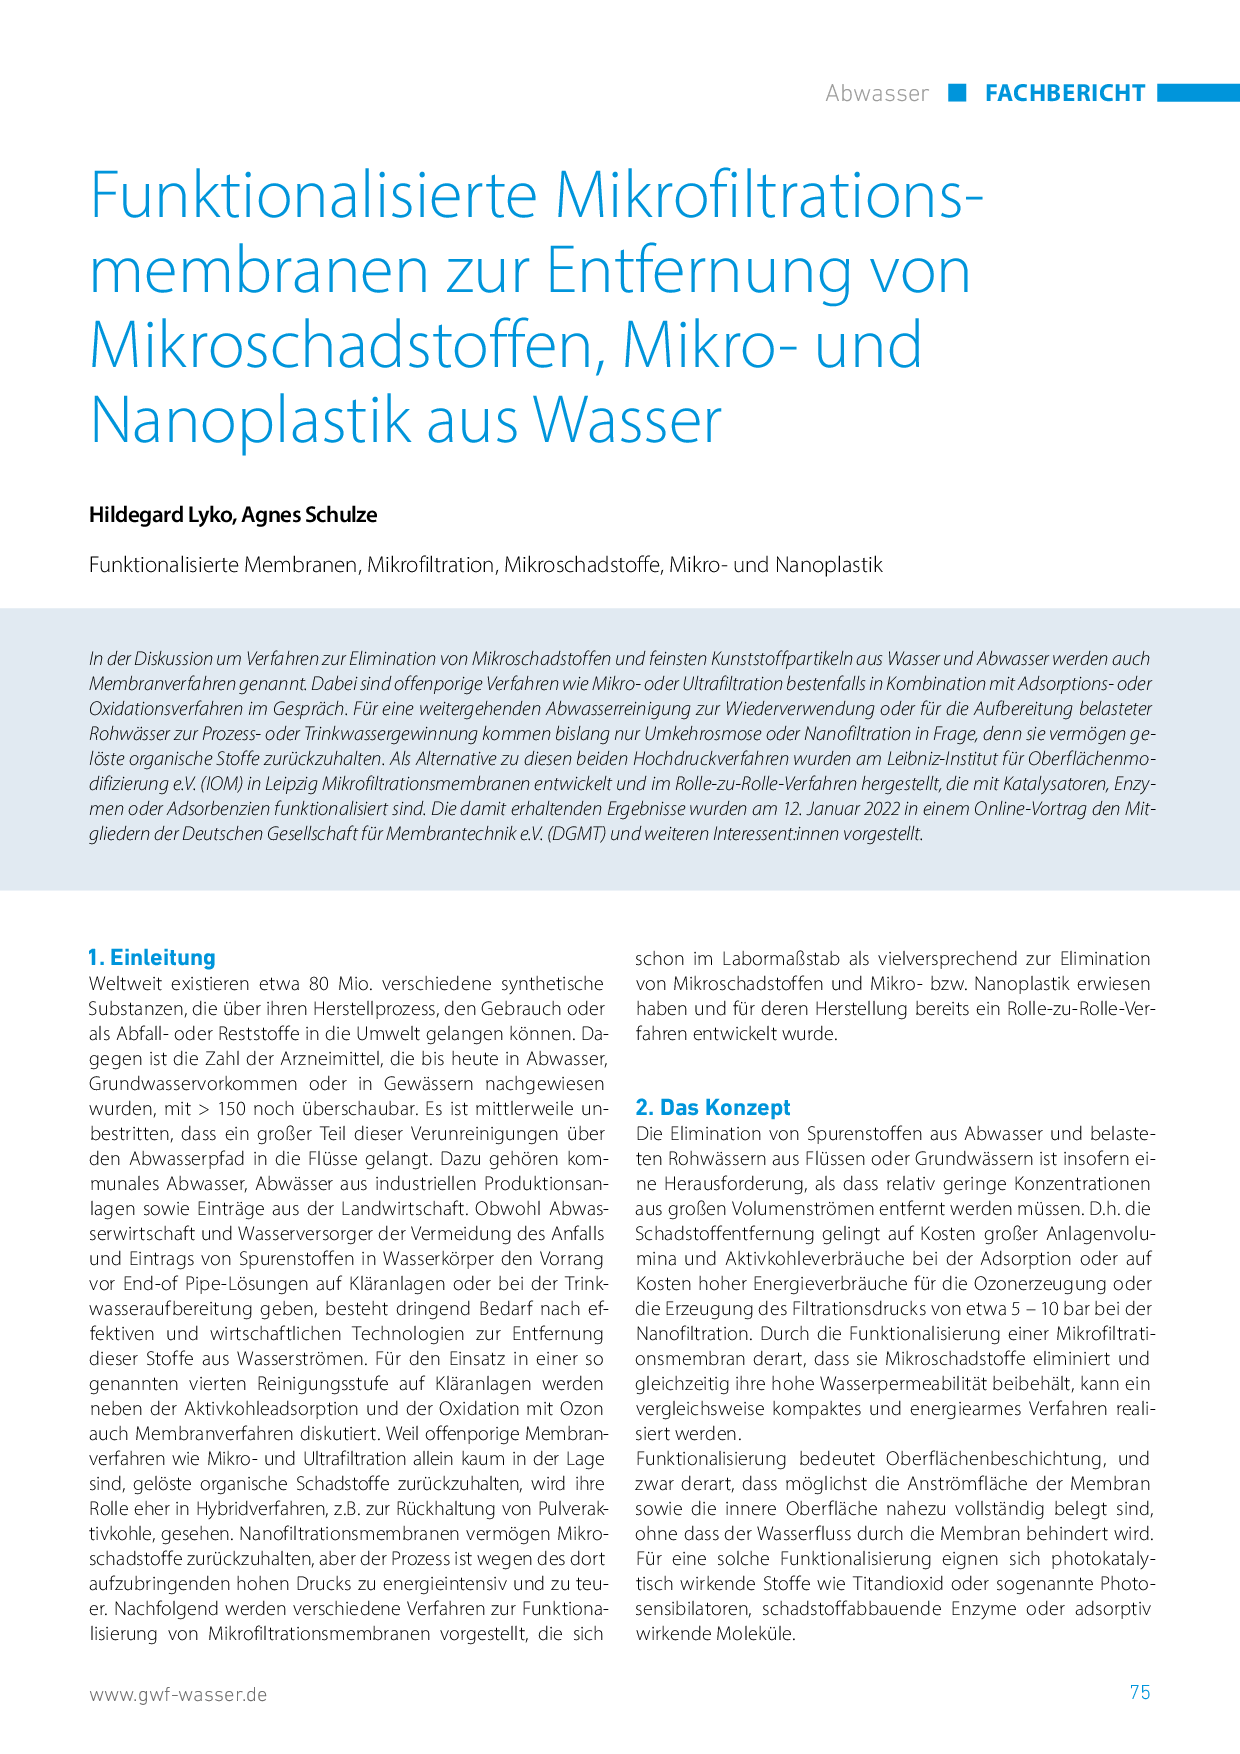 Funktionalisierte Mikrofiltrationsmembranen zur Entfernung von Mikroschadstoffen, Mikro- und Nanoplastik aus Wasser